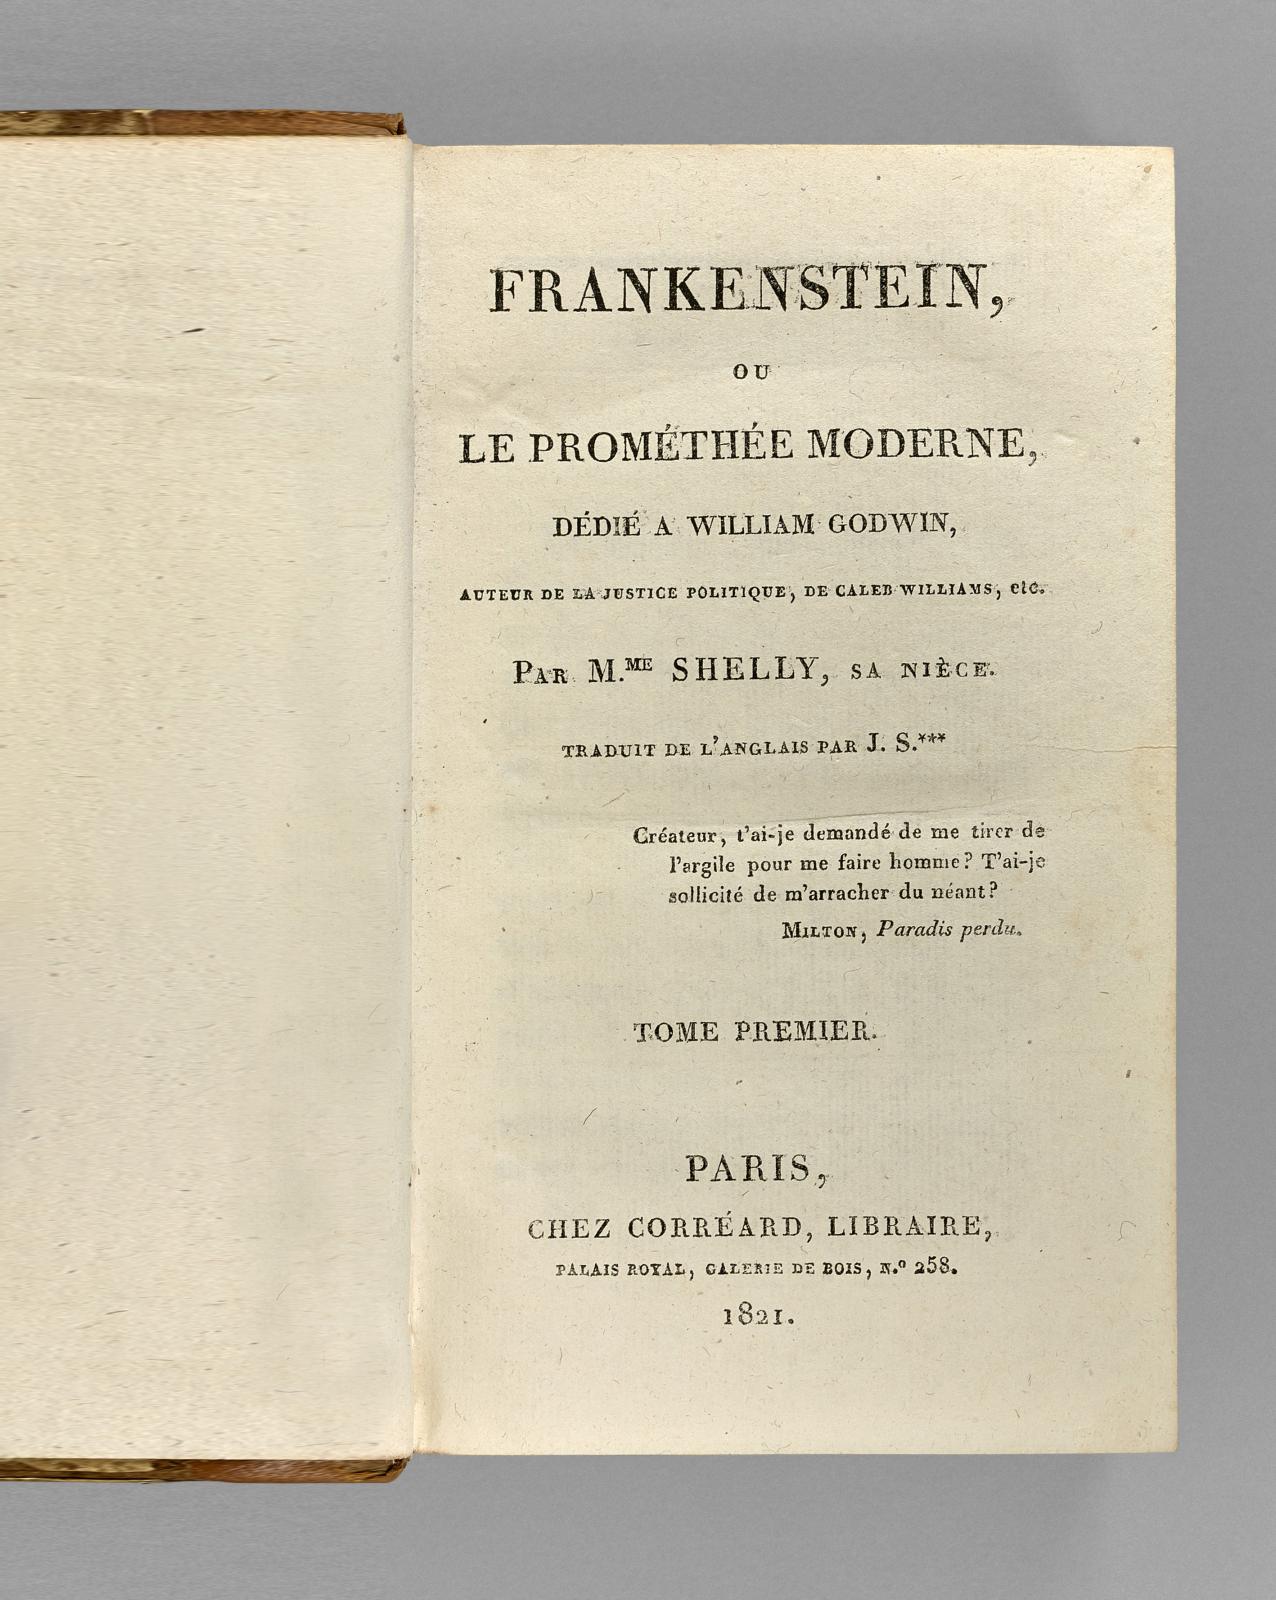 Cote : Frankenstein, plus de 200 ans et toujours aussi actuel